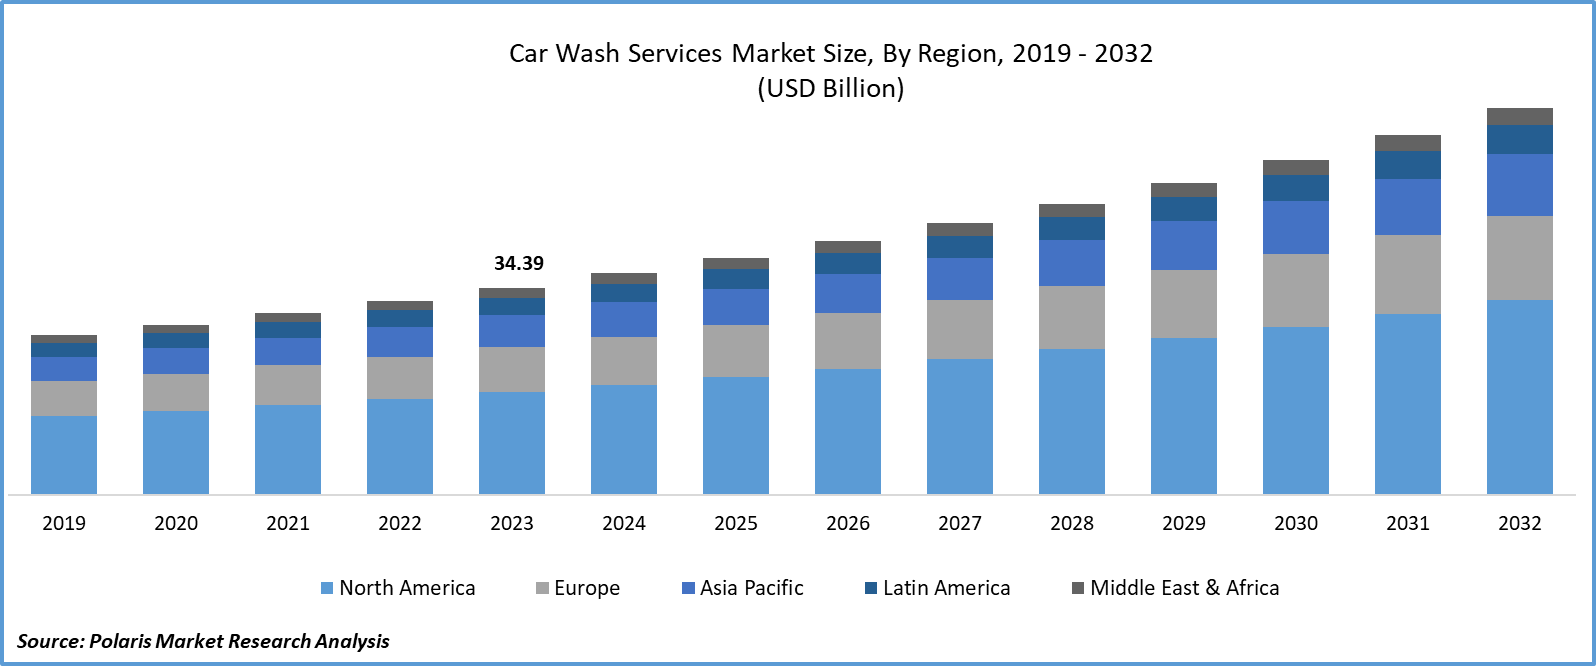 Car Wash Services Market Size